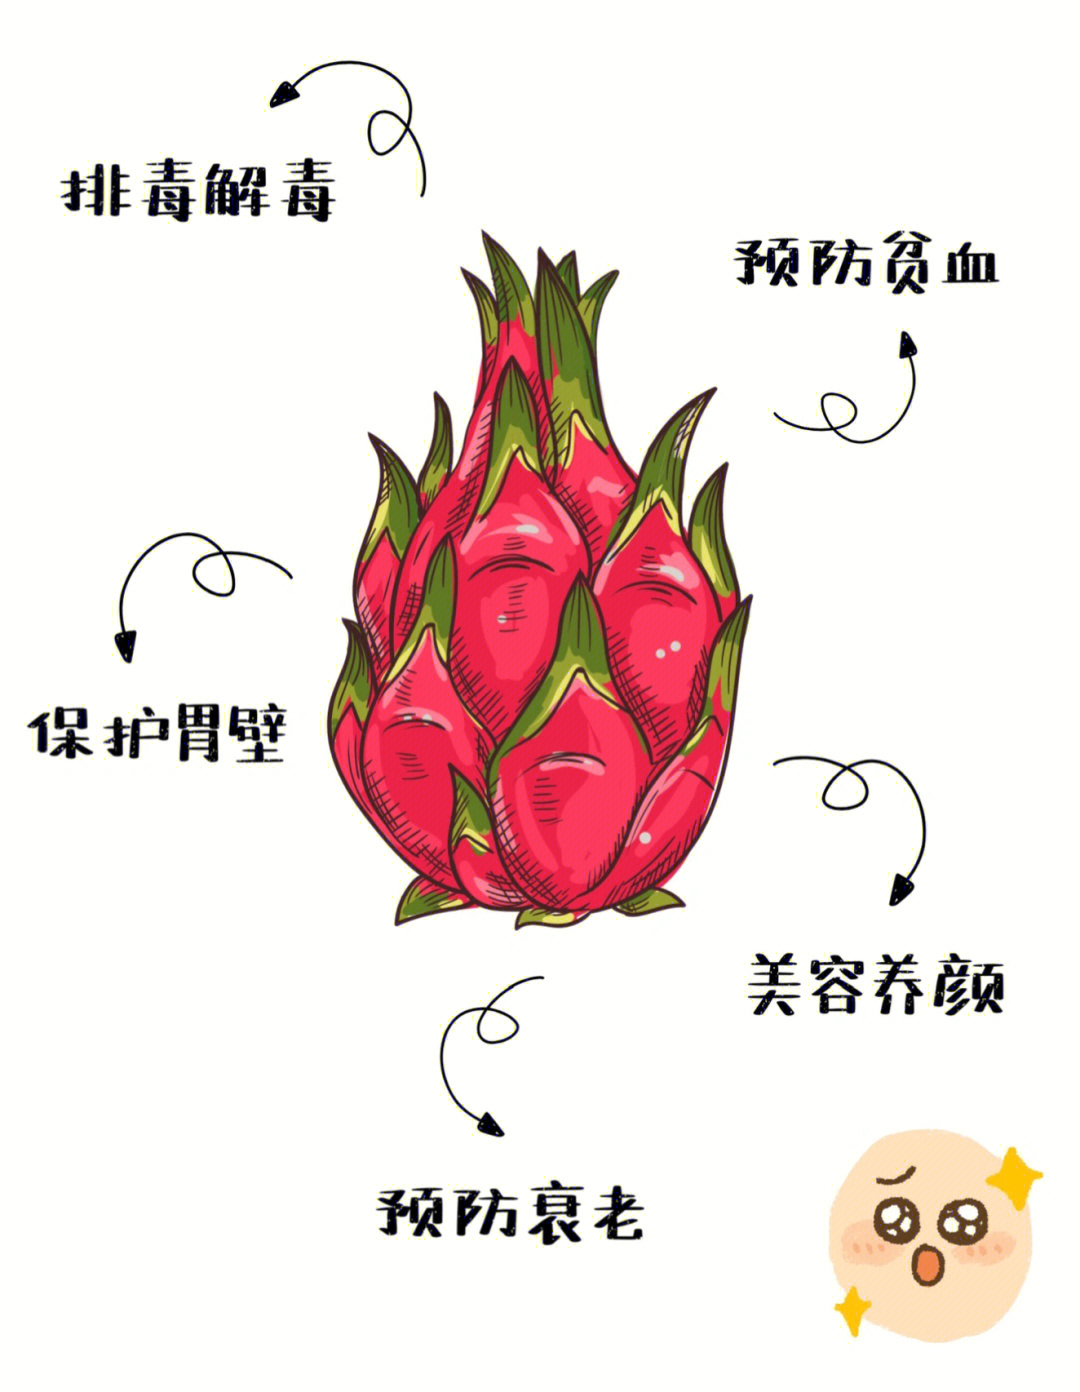 火龙果的功效与作用021,排毒解毒火龙果中含有一般果蔬少有的参锇